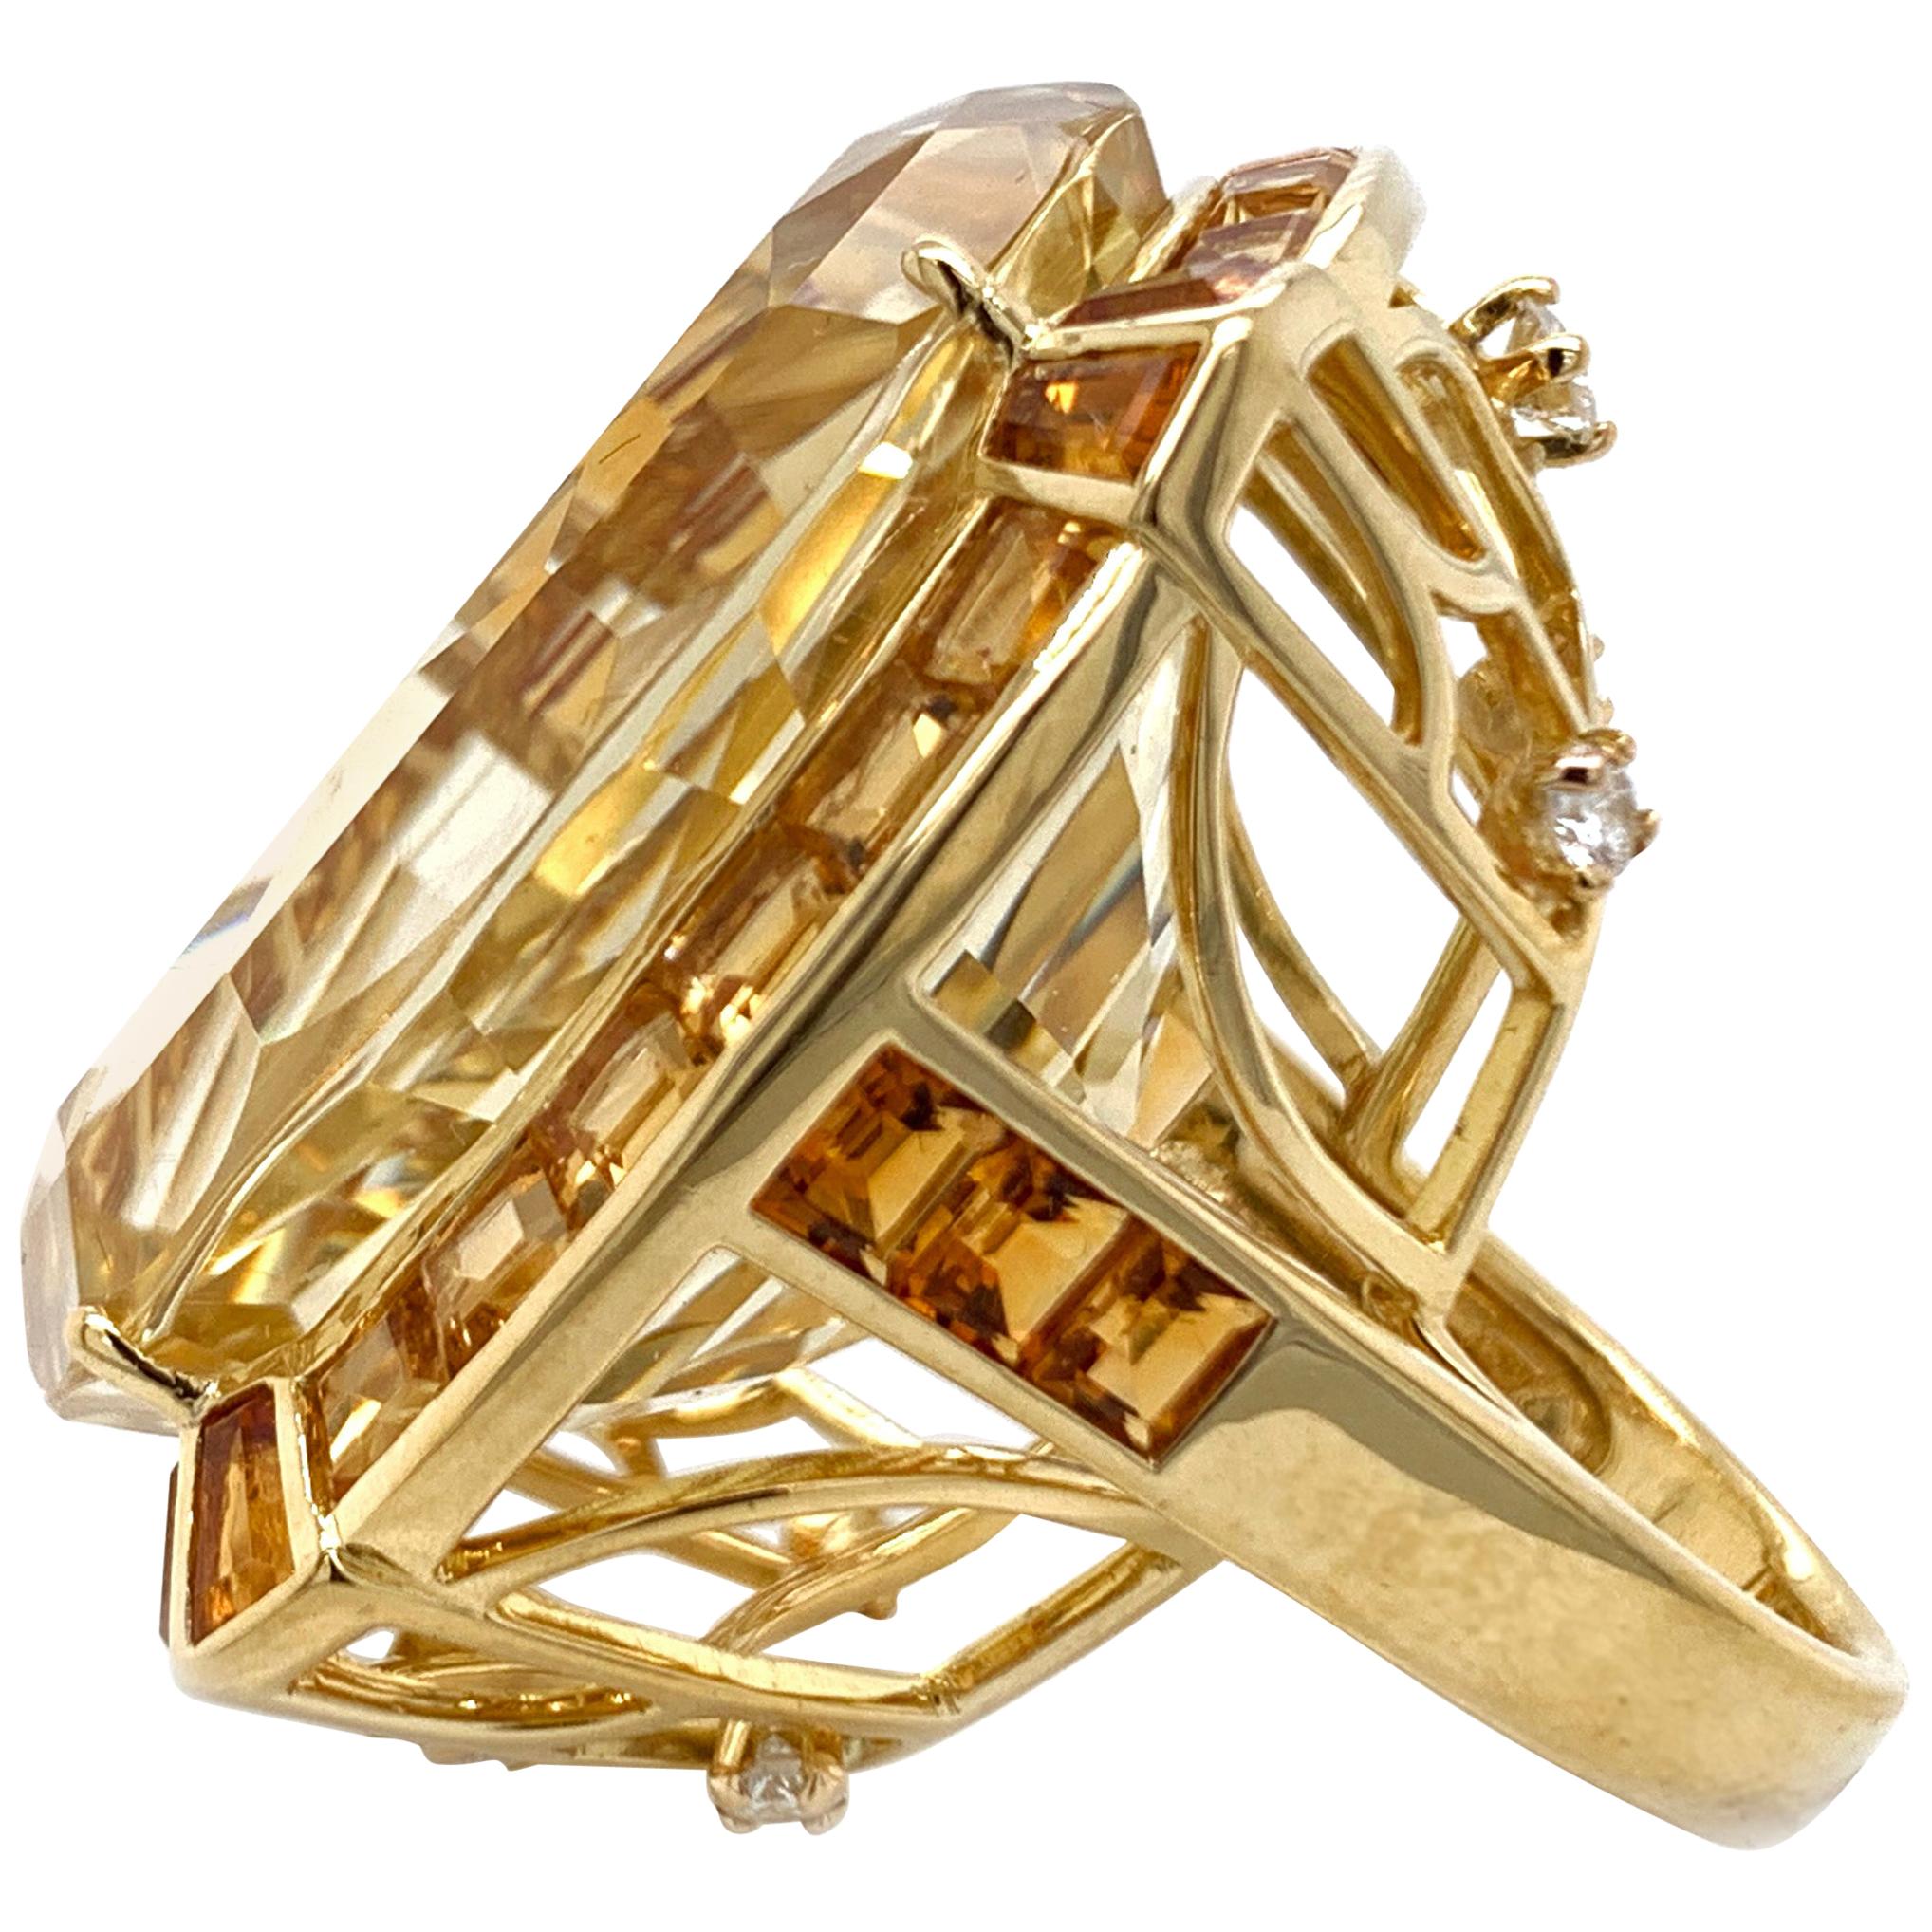 18 Karat Yellow Gold Citrine and Diamond Ring